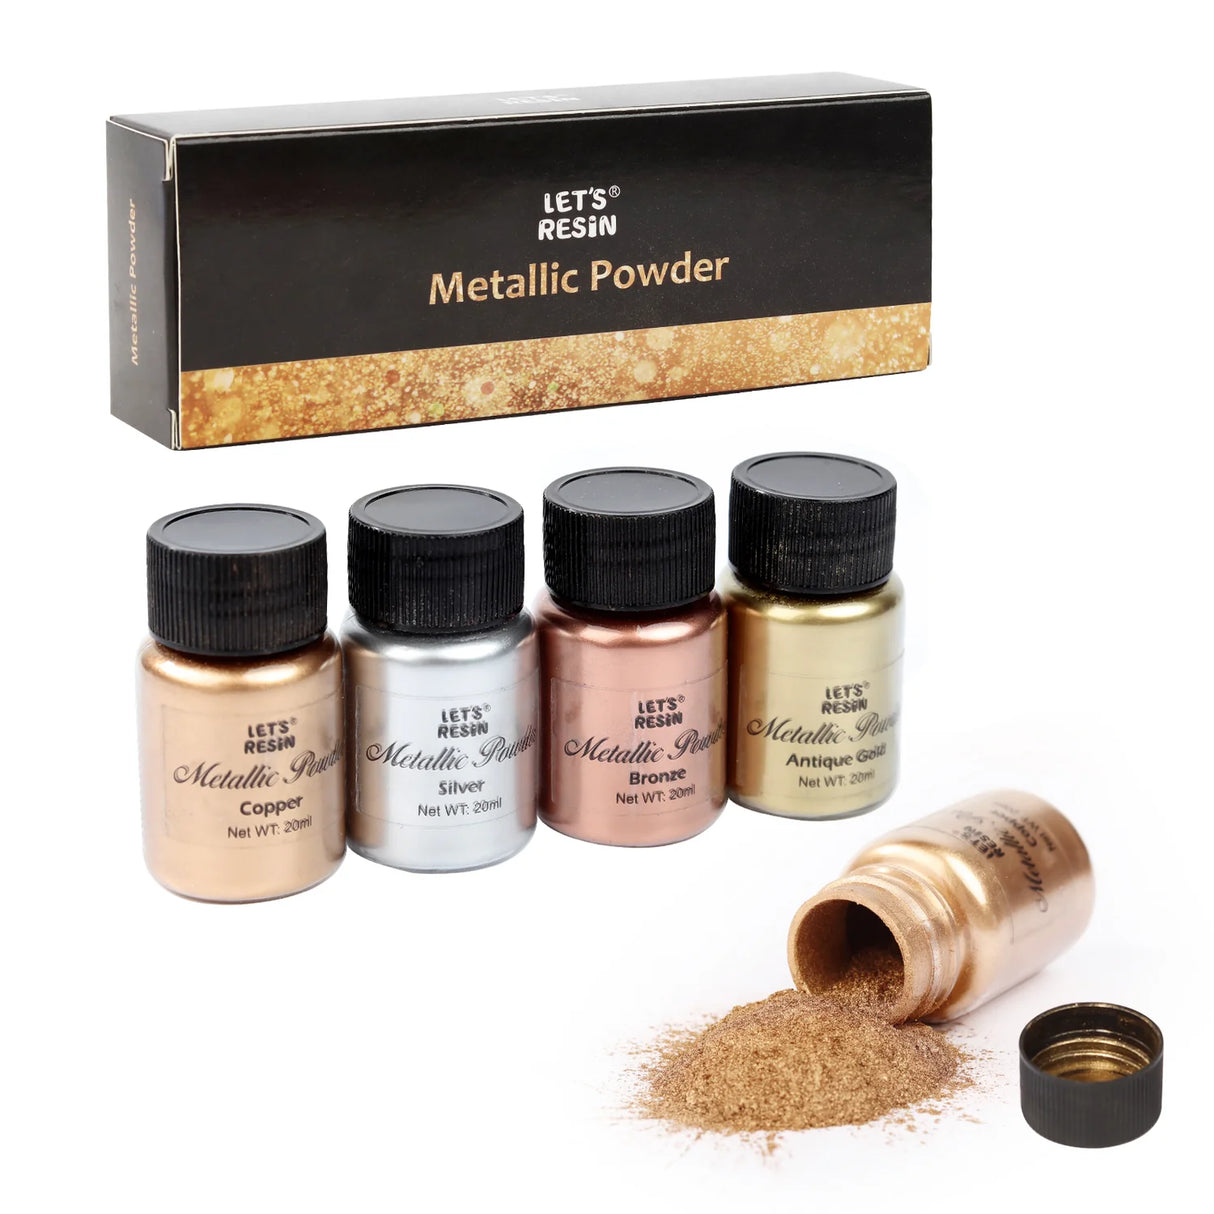 Let's Resin Metallic Mica Powder - 5 Jar Set